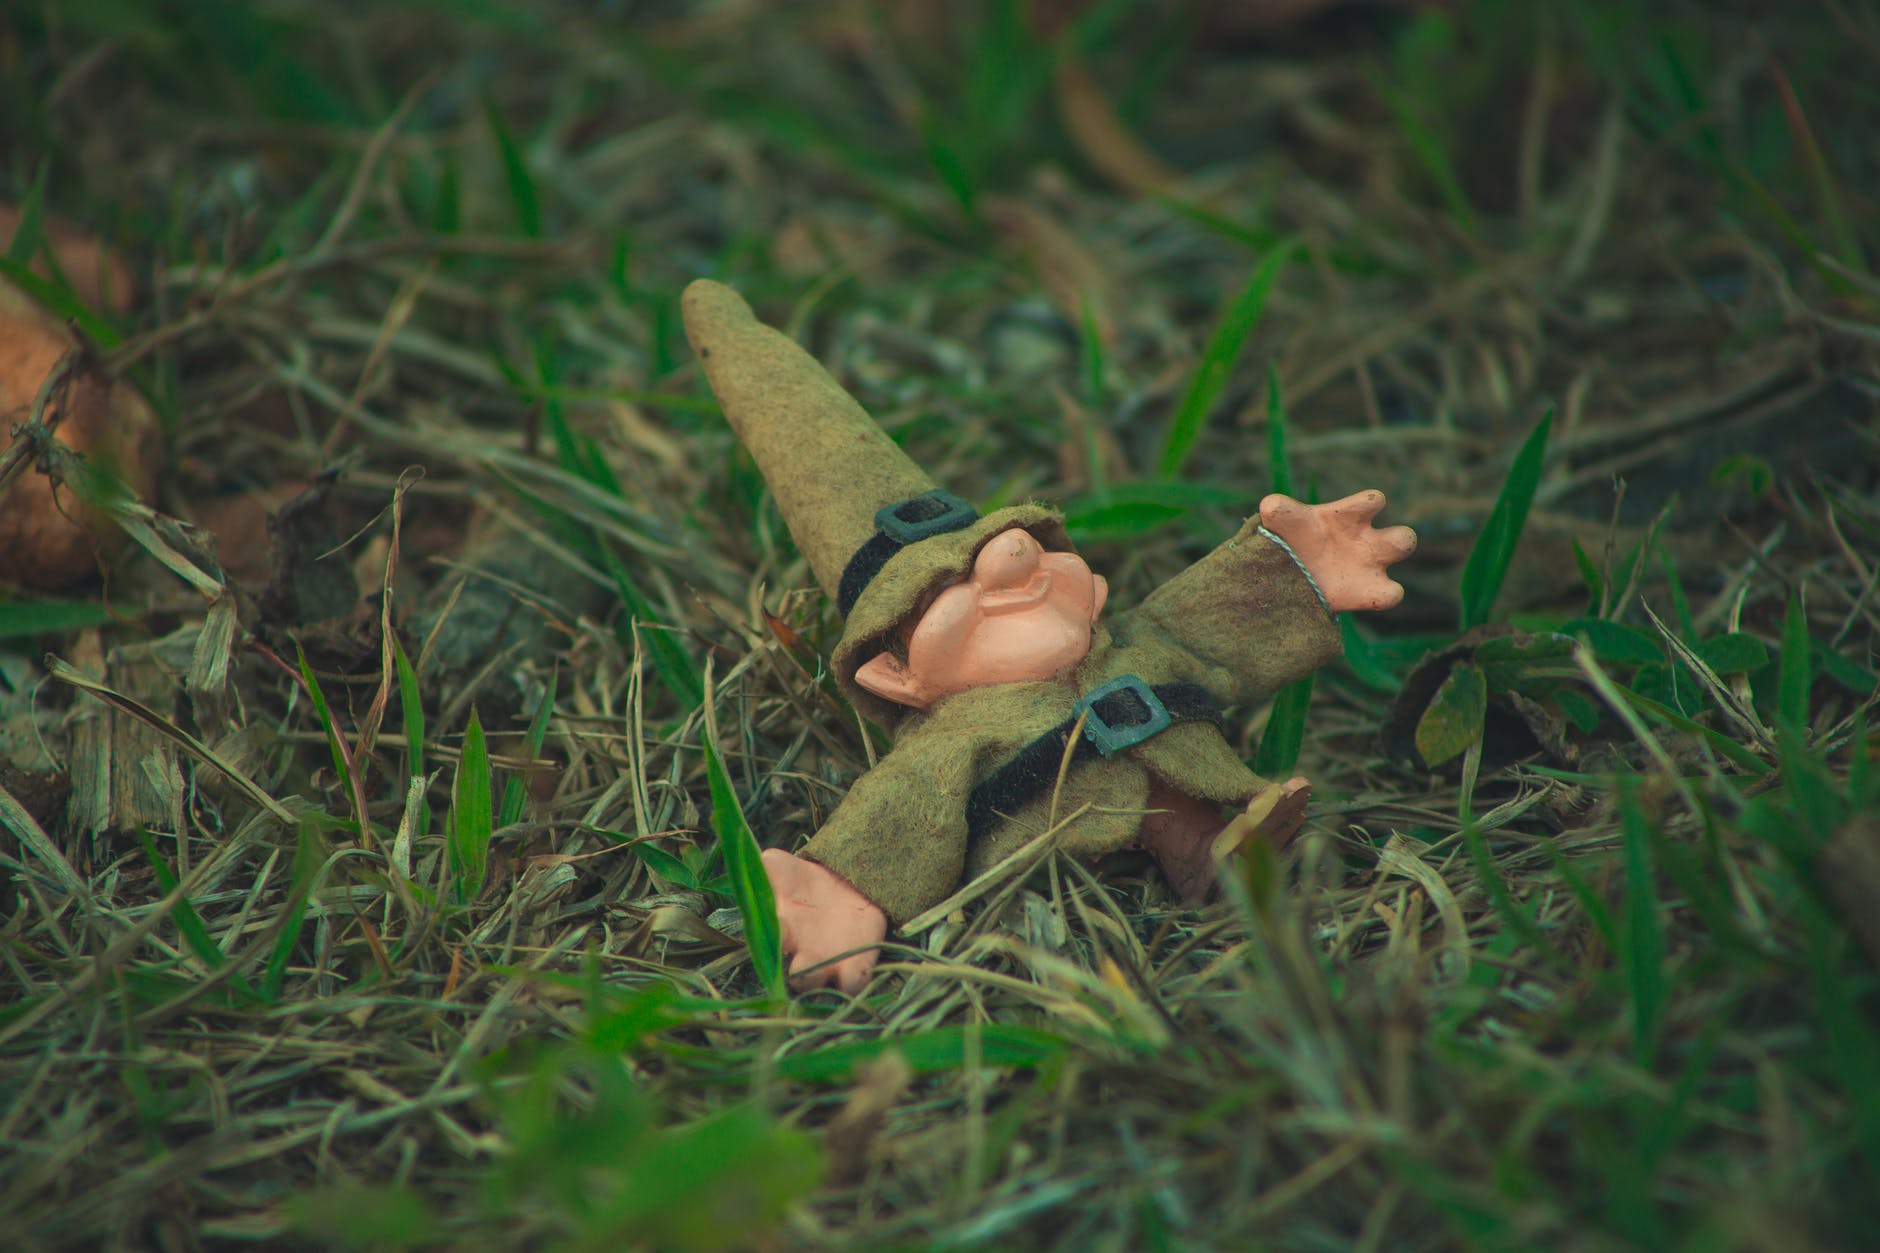 little dwarf doll lying in grass